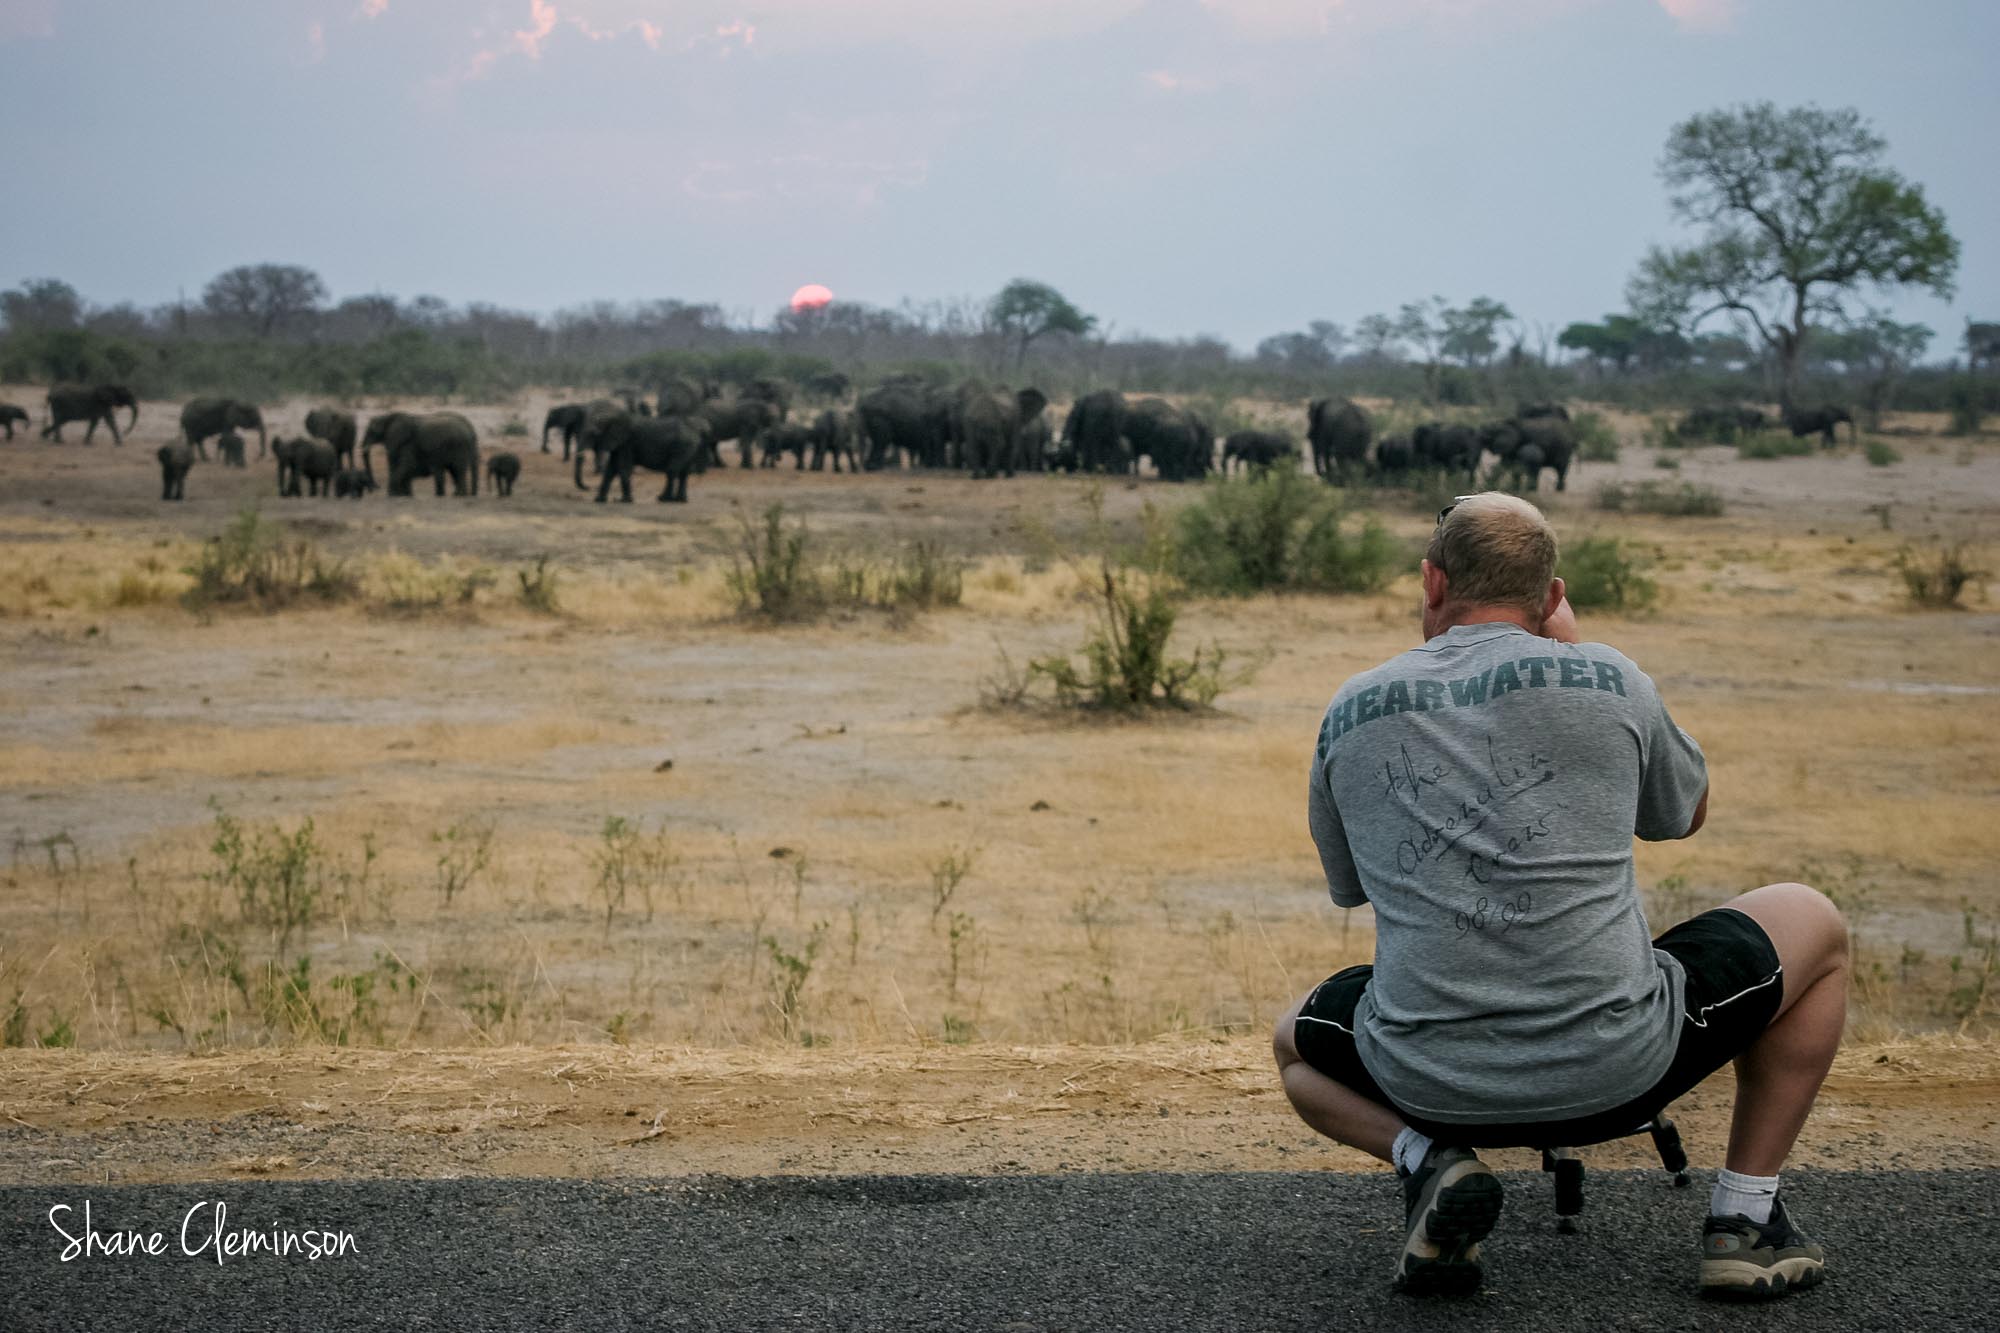 Shane Cleminson Photographing Elephants in Zimbabwe Africa